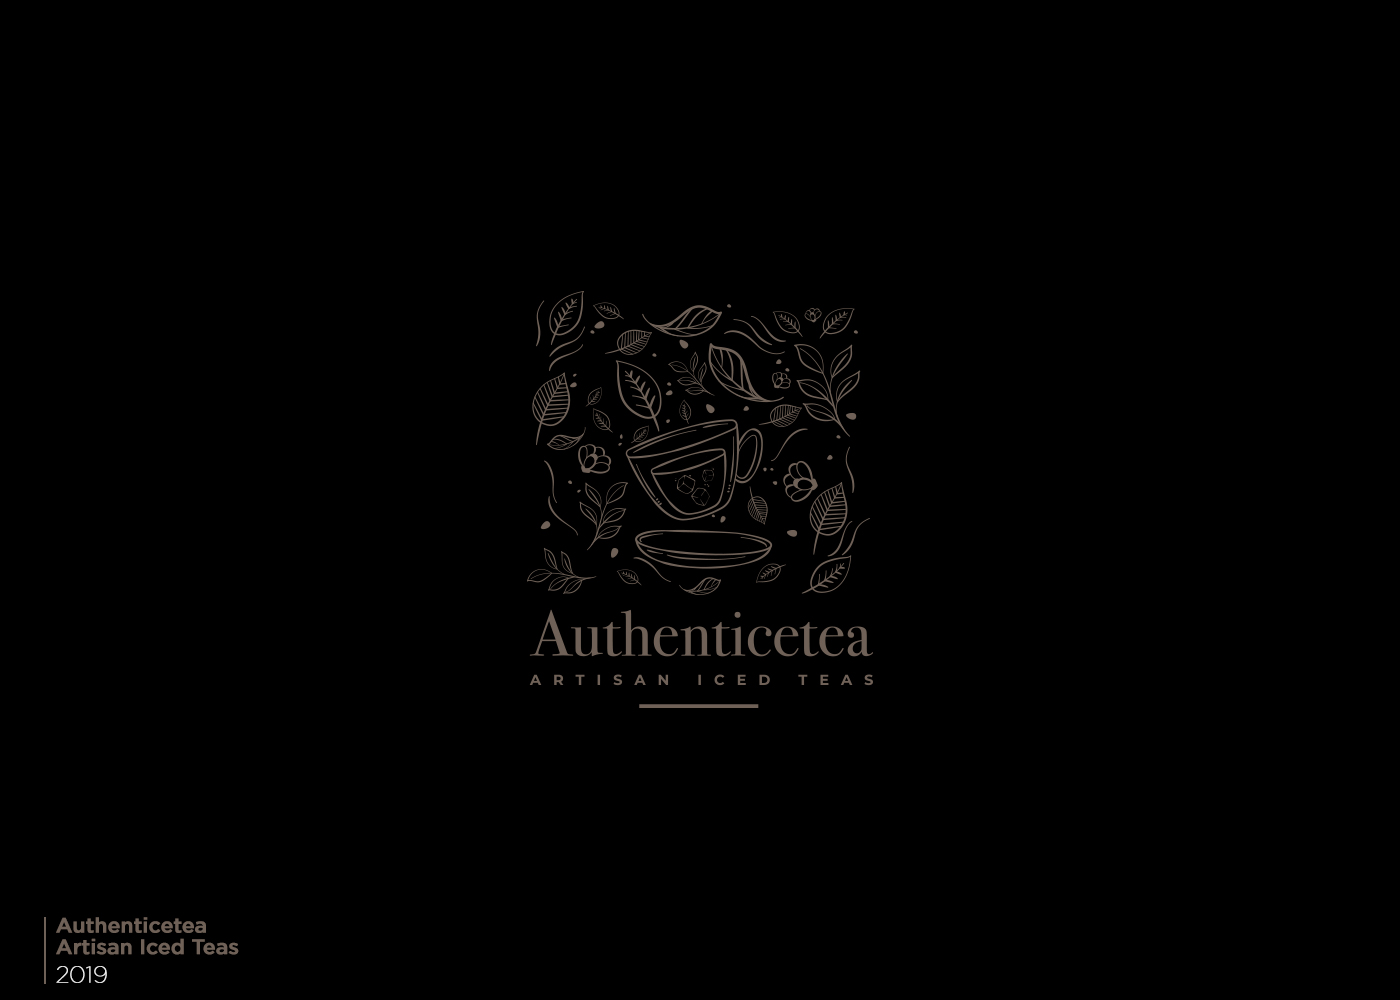 authenticetea logo and branding